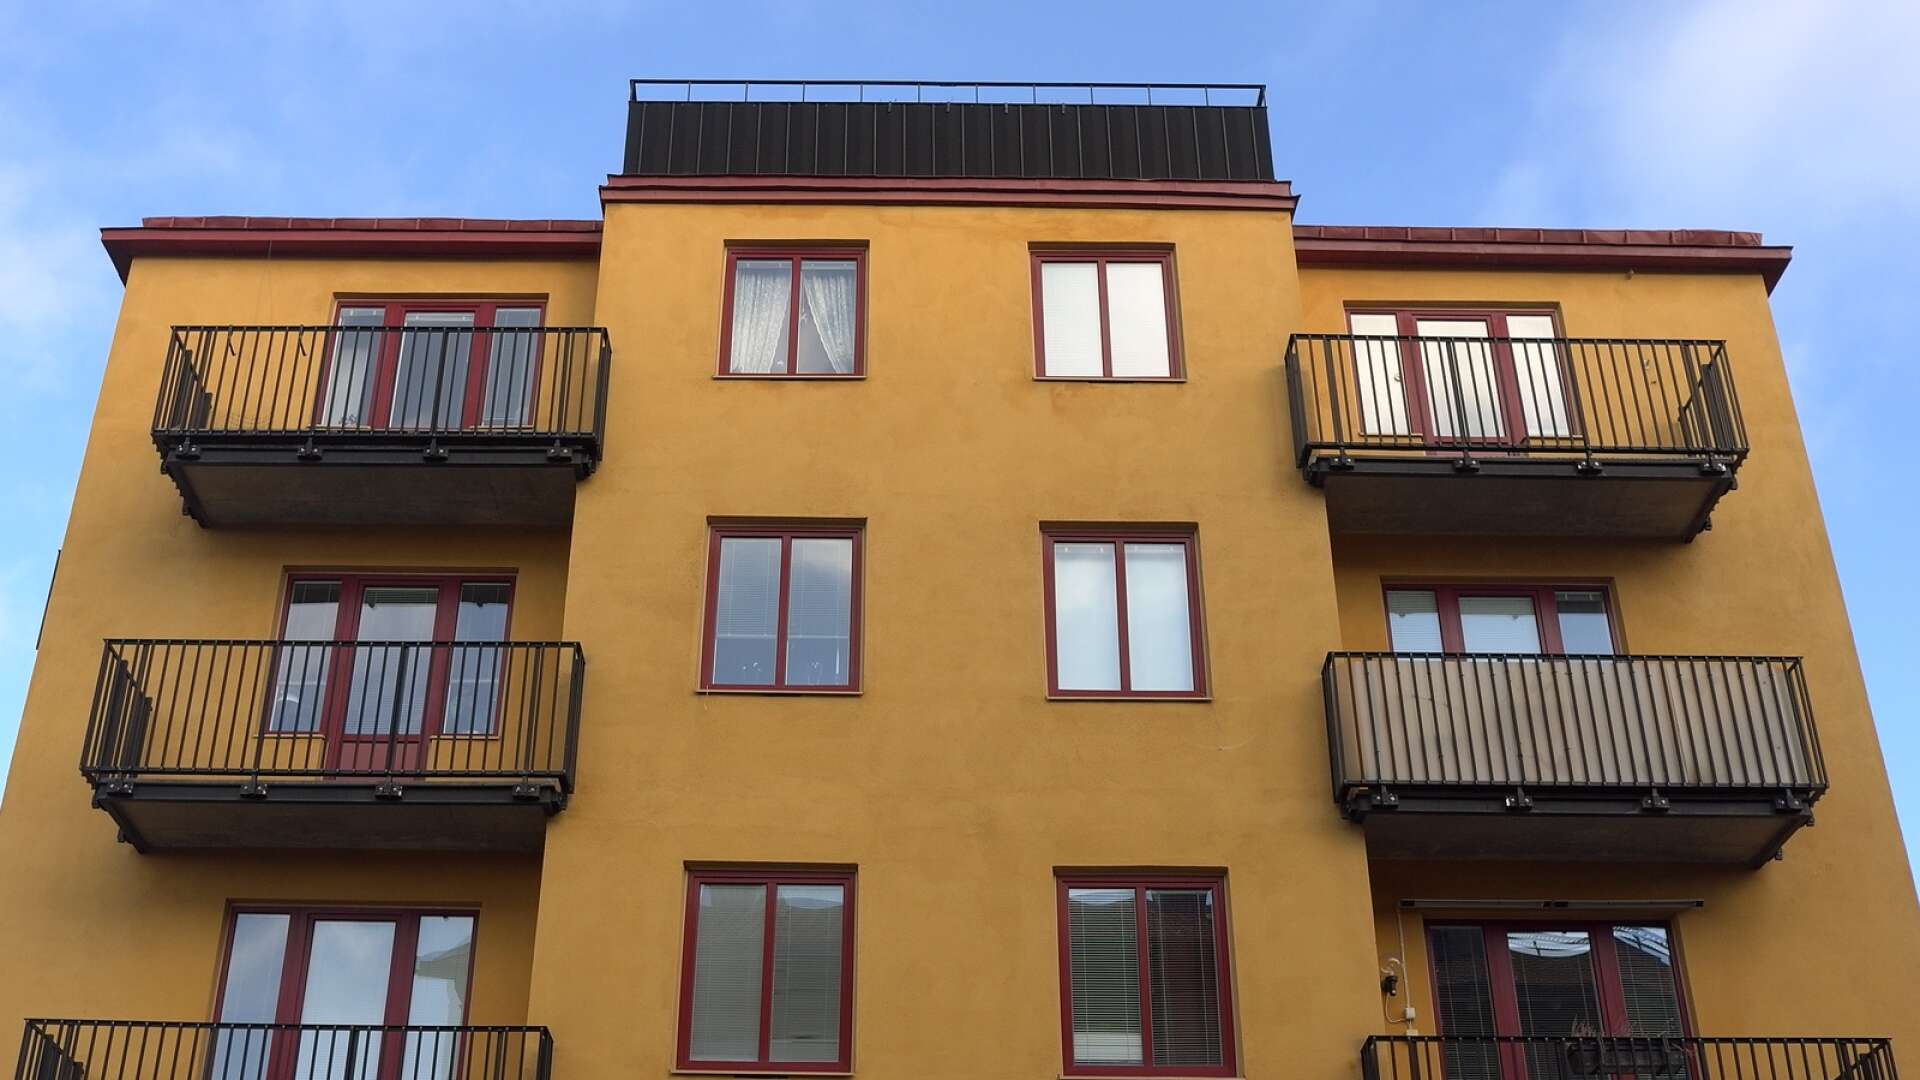 För att fastighetsbolag ska kunna fortsätta att investera i hyresrätter och erbjuda bra boende behövs en fungerande hyresutveckling, skriver Sanna Andersson.